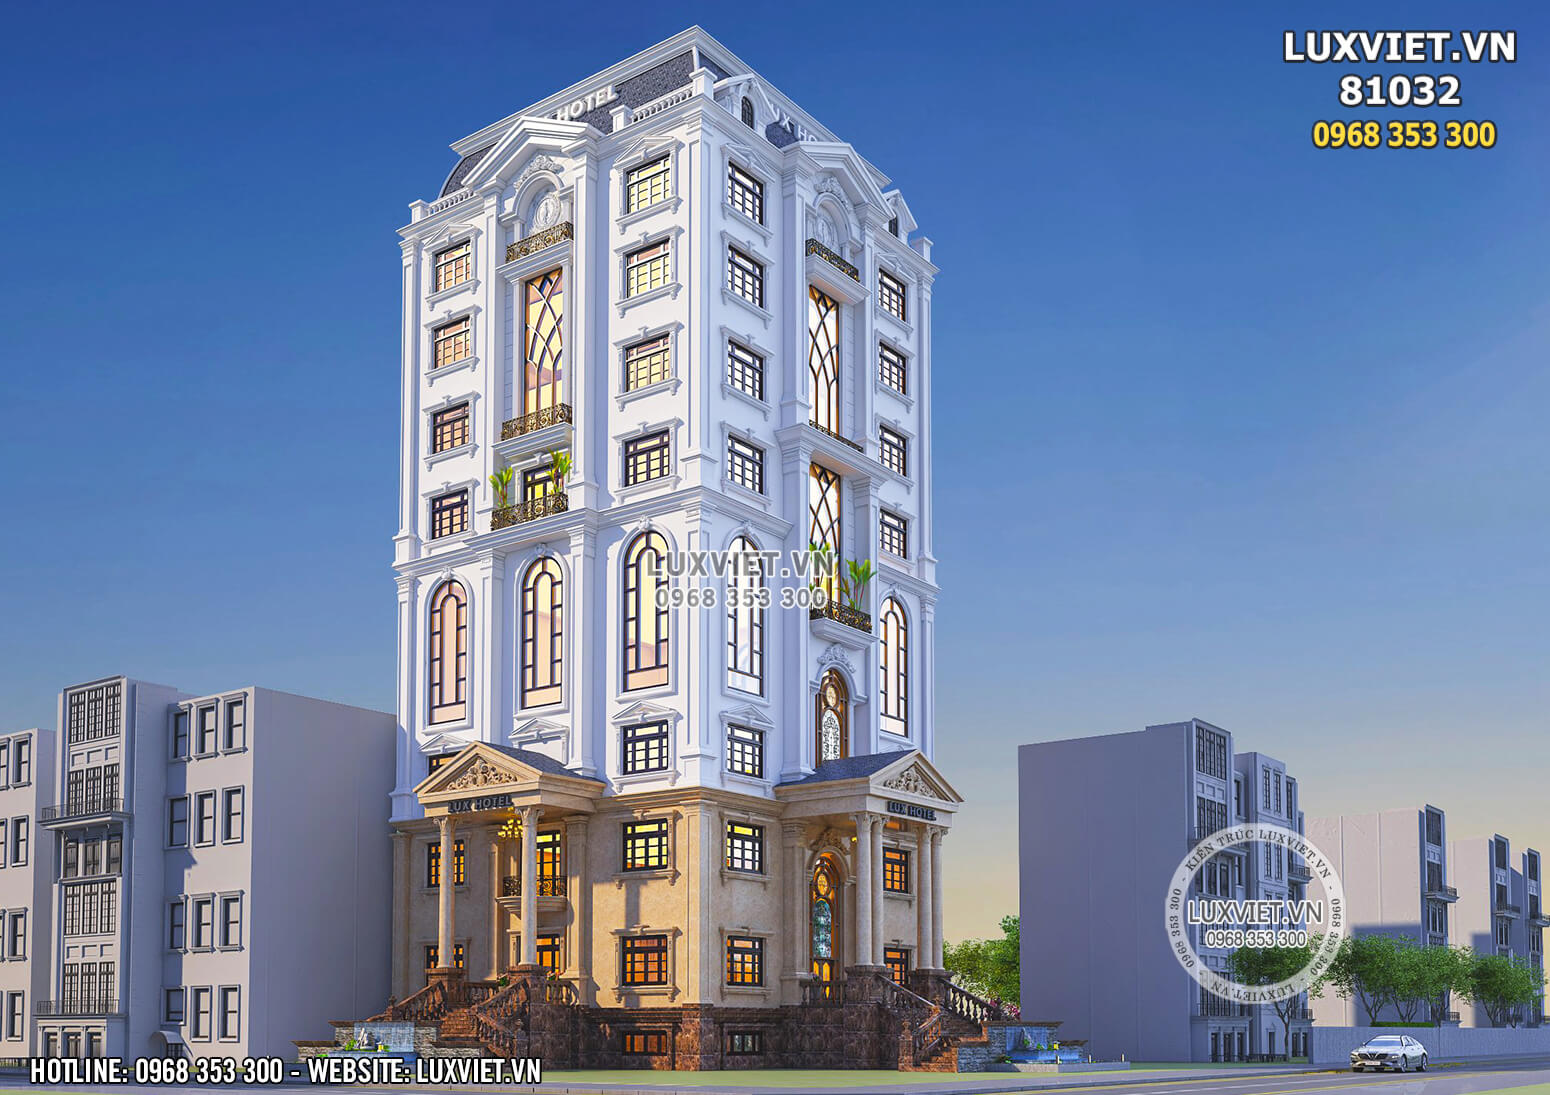 Hình ảnh: Ngoại thất của khách sạn 10 tầng được thiết kế với 3 khối nhà ấn tượng